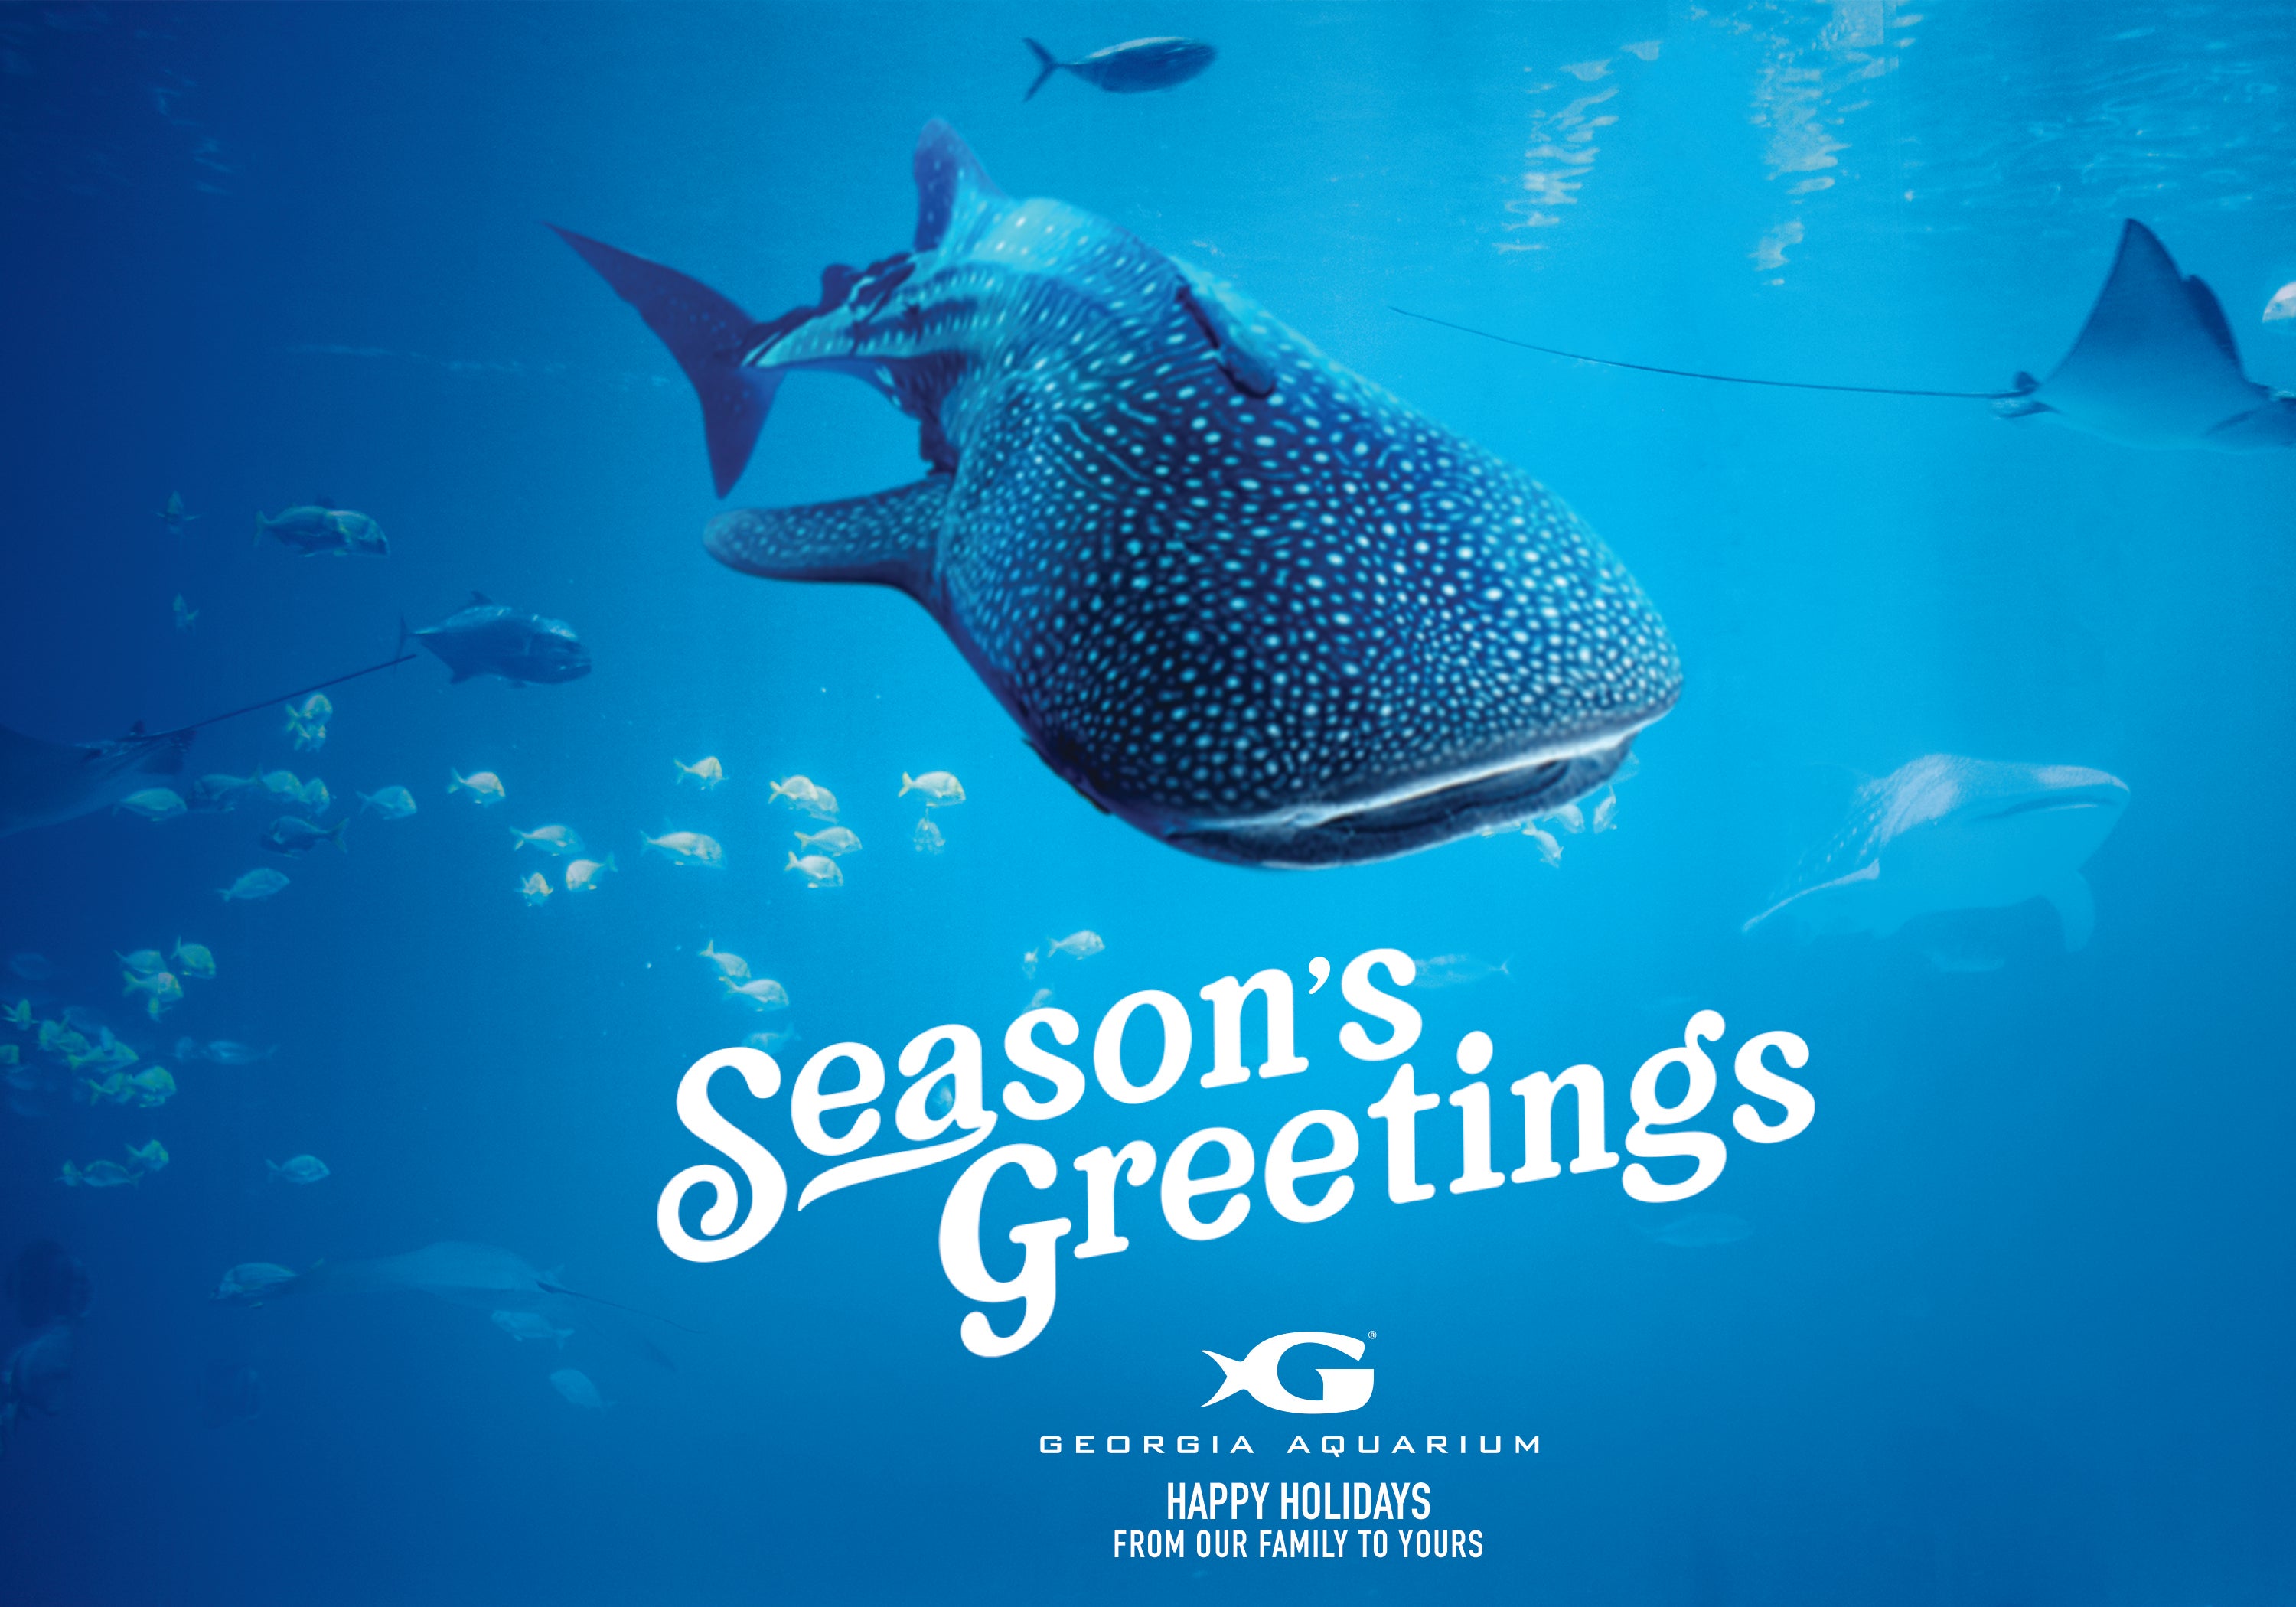 Whale Shark Holiday Card